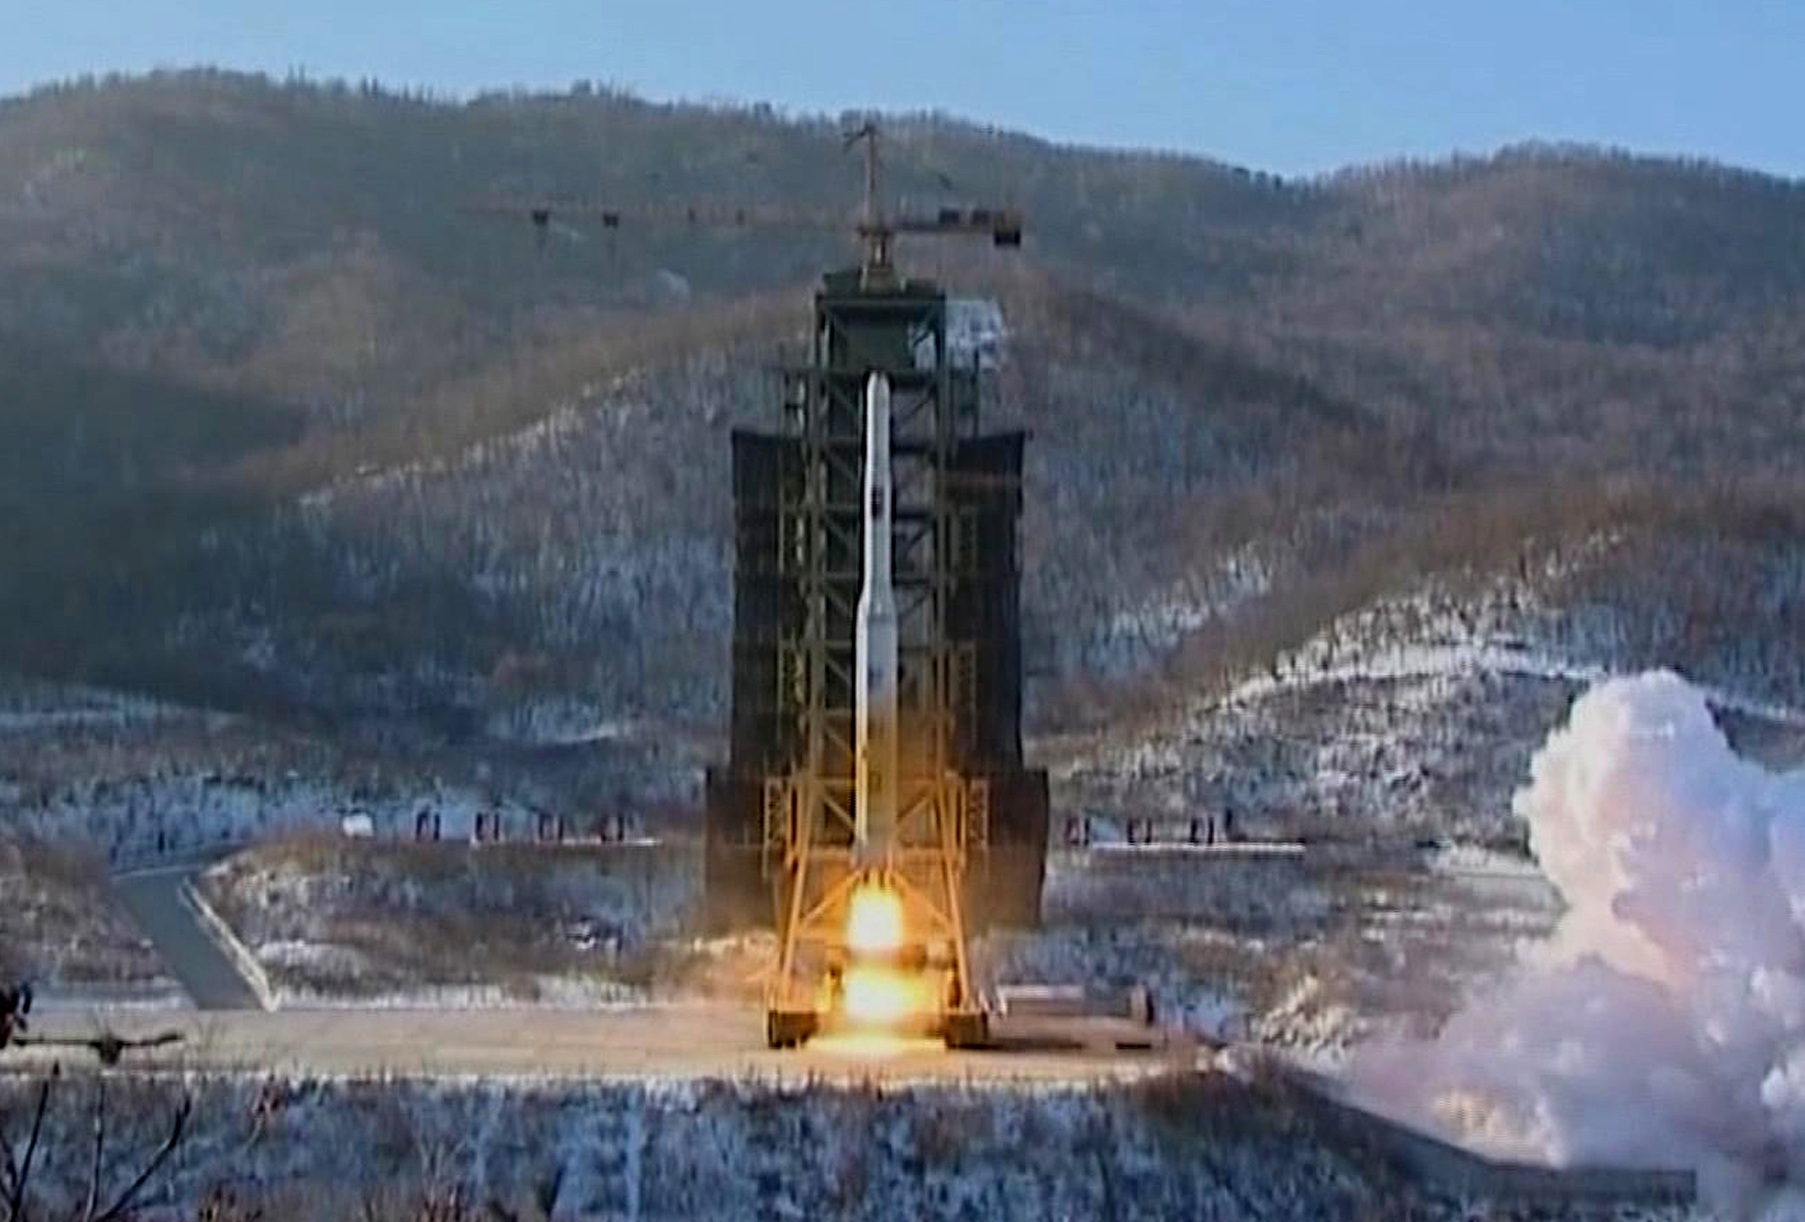 http://www.vosizneias.com/wp-content/uploads/2013/01/North-Korea-Nuclear_sham.jpg